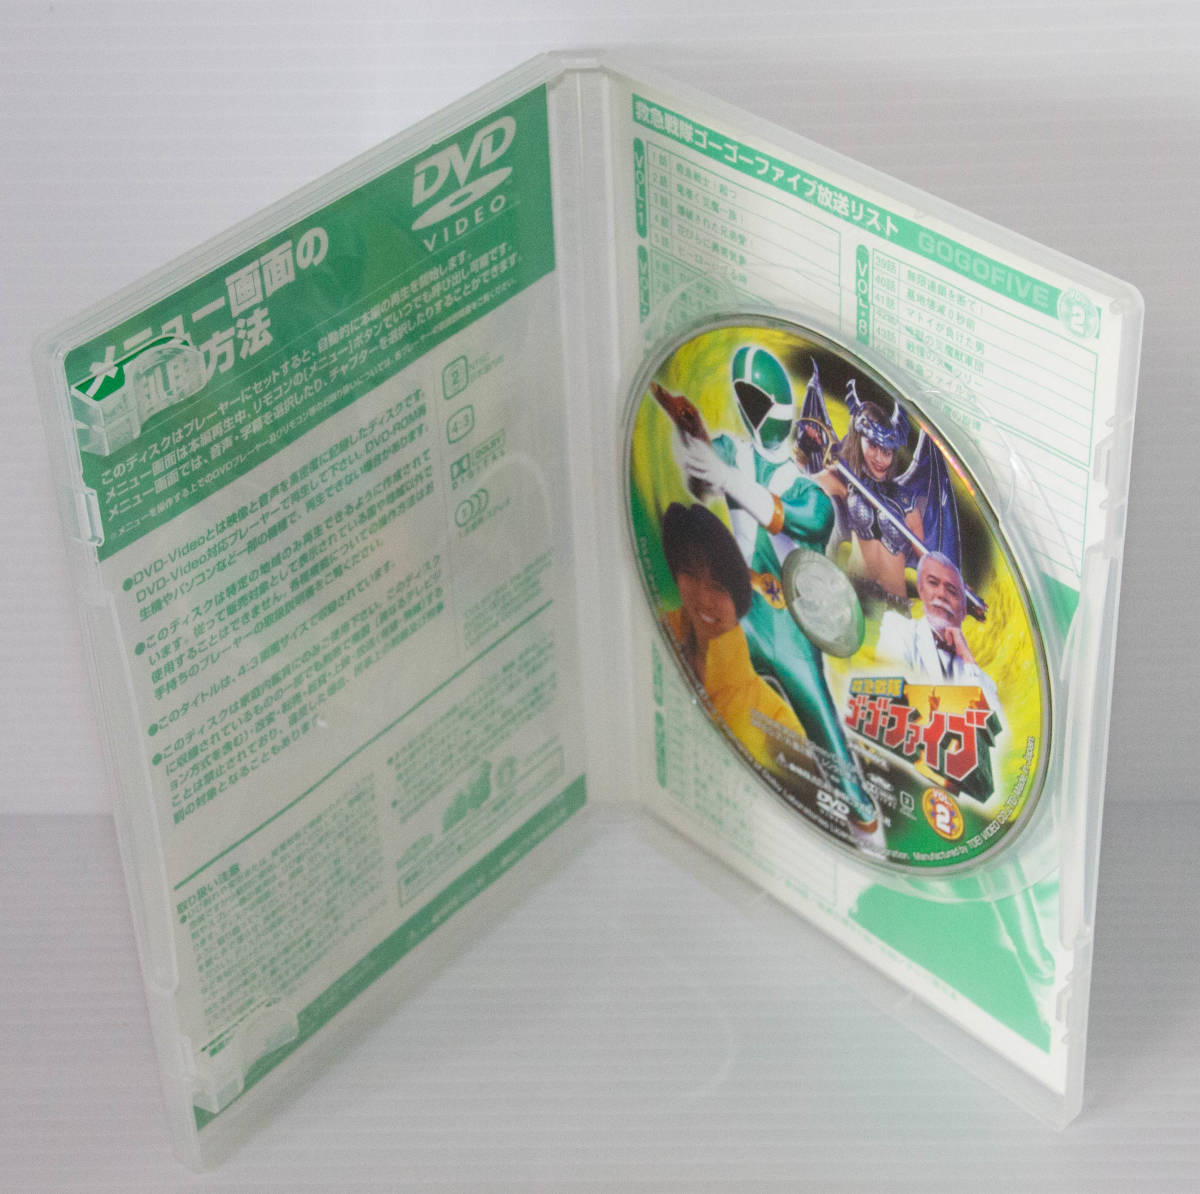 救急戦隊ゴーゴーファイブ Vol.2 DVD